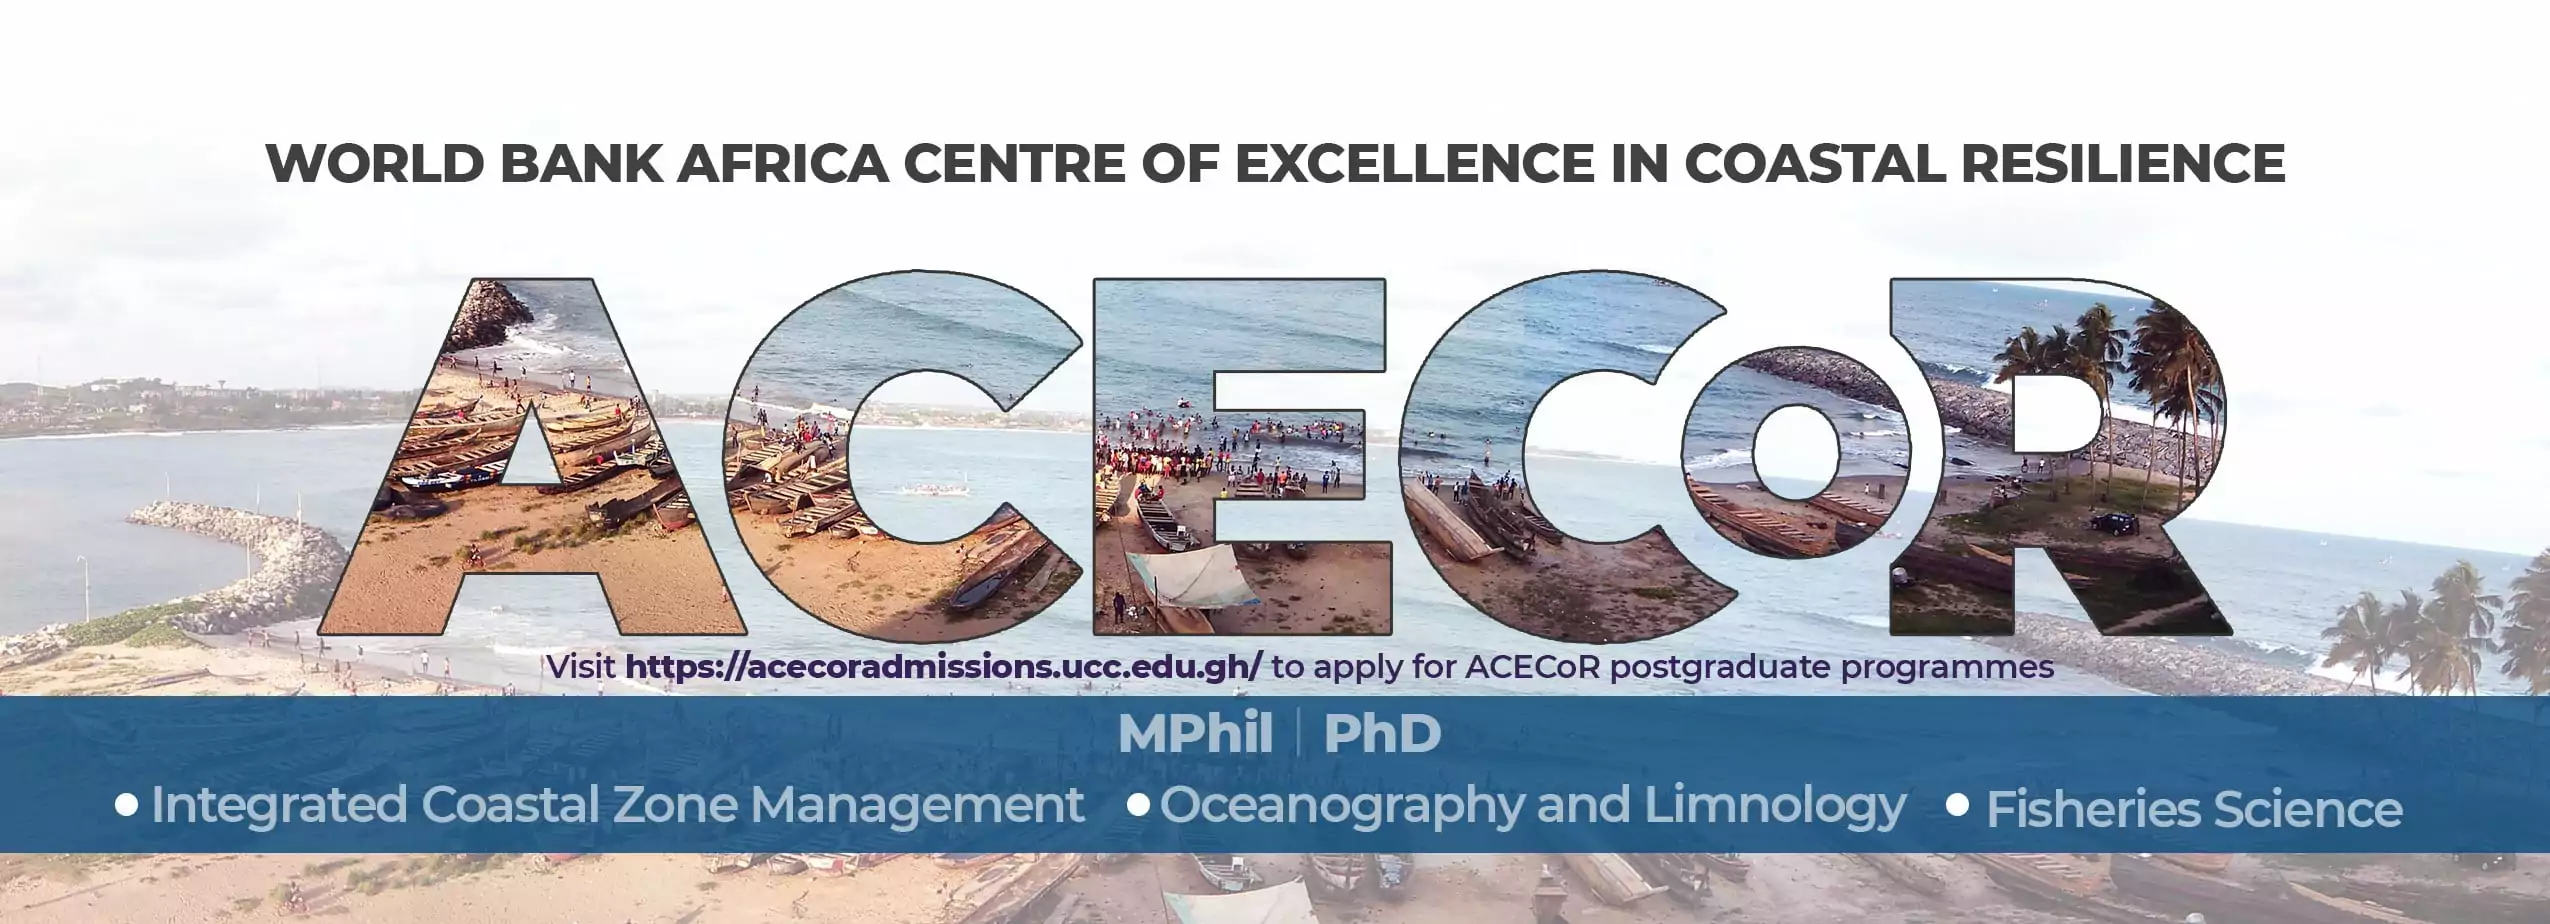 Bourse ACECoR de la Banque mondiale 2020/2021 pour étudier à l’Université de Cape Coast